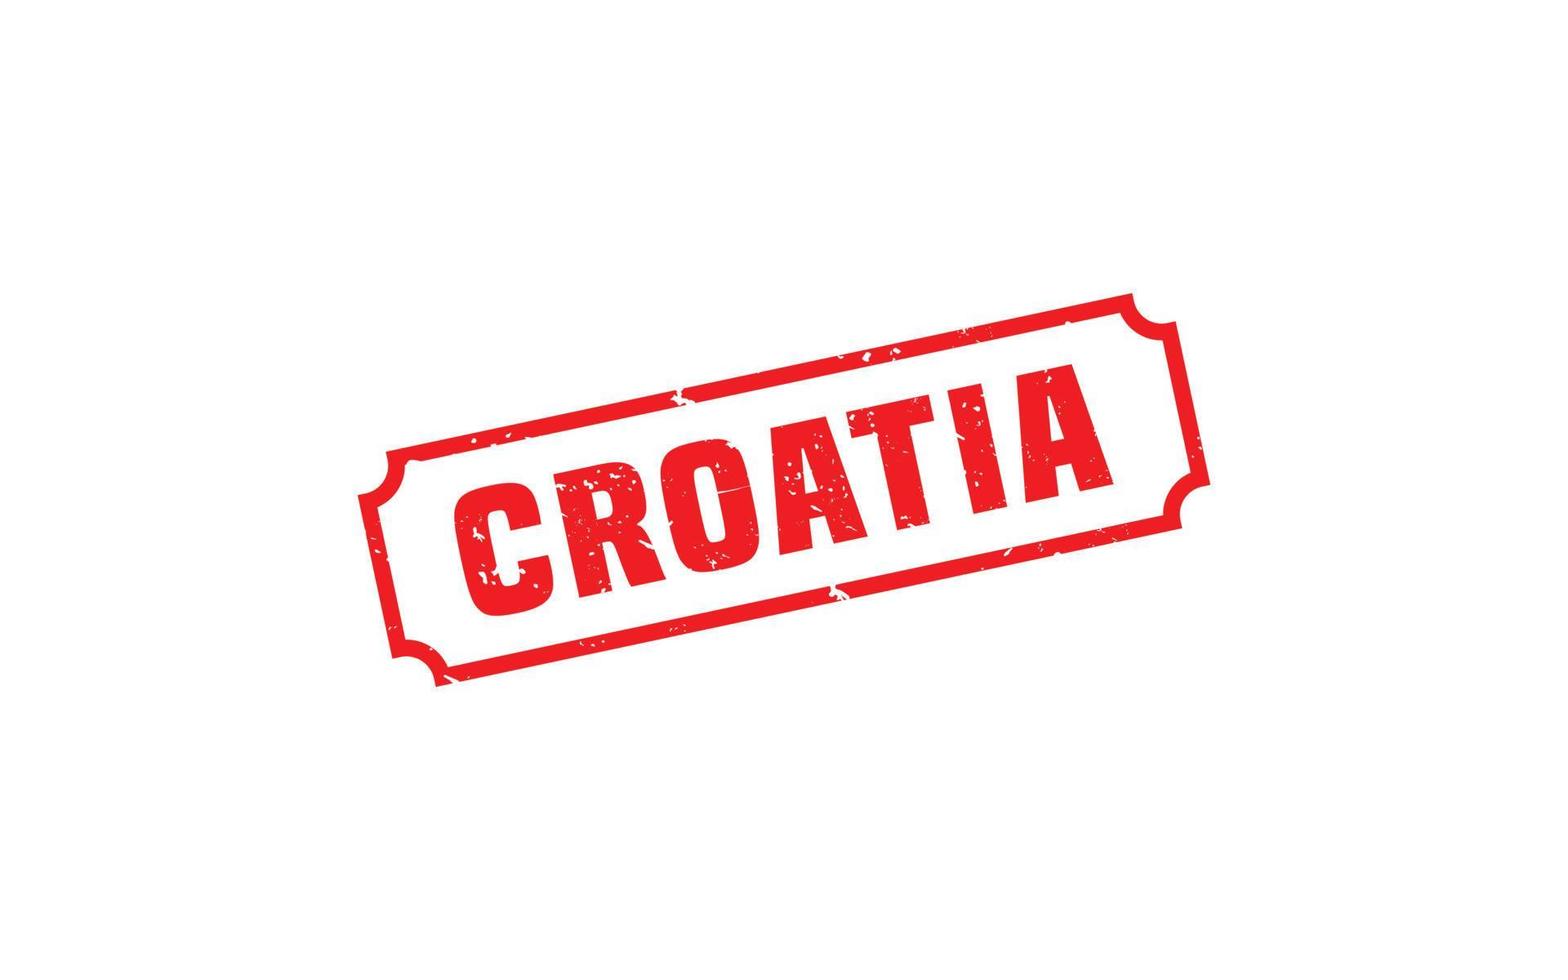 Kroatien Stempelgummi mit Grunge-Stil auf weißem Hintergrund vektor